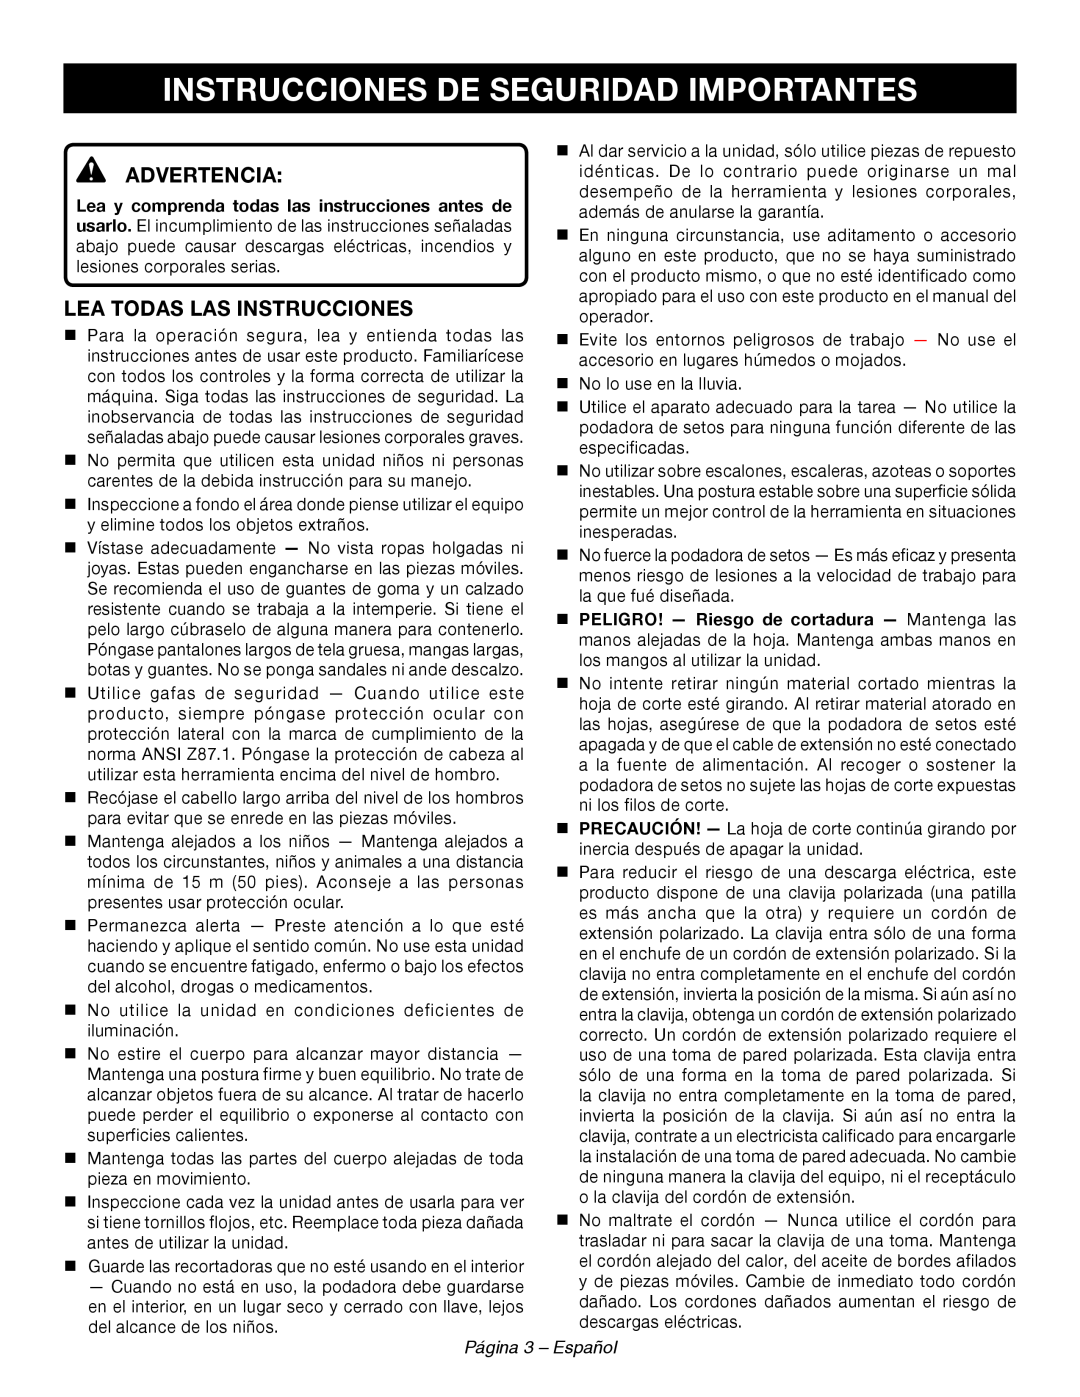 Ryobi RY44140 Instrucciones De Seguridad Importantes, Advertencia, Lea Todas Las Instrucciones, Página 3 - Español 